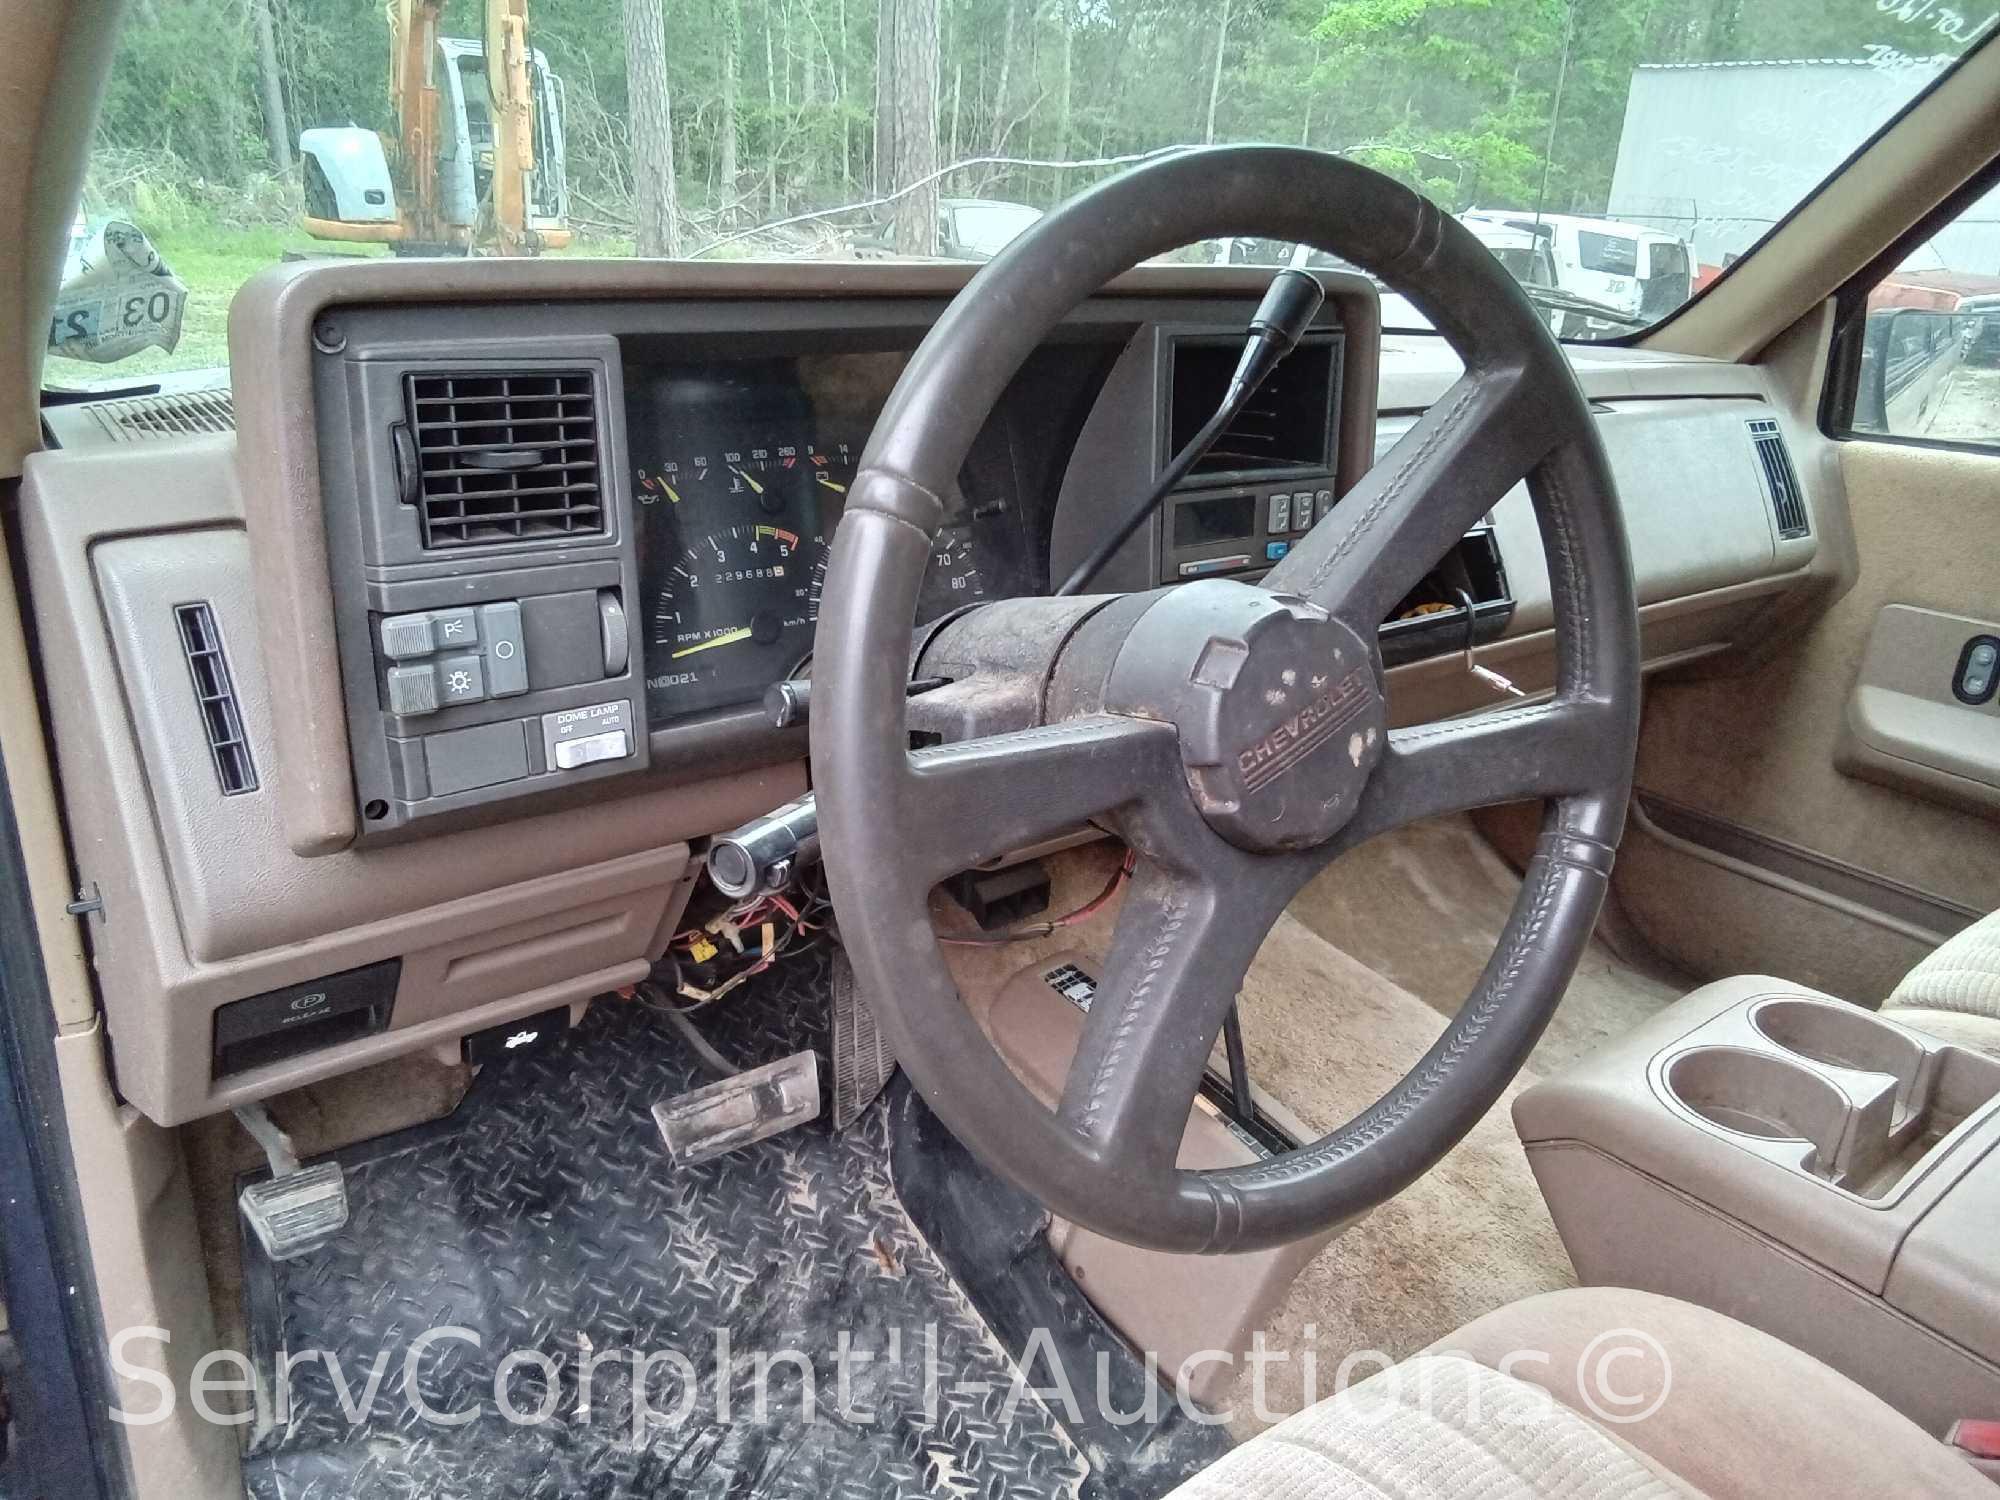 1993 Chevrolet Suburban Multipurpose Vehicle (MPV), VIN # 1GNFK16K3PJ386590